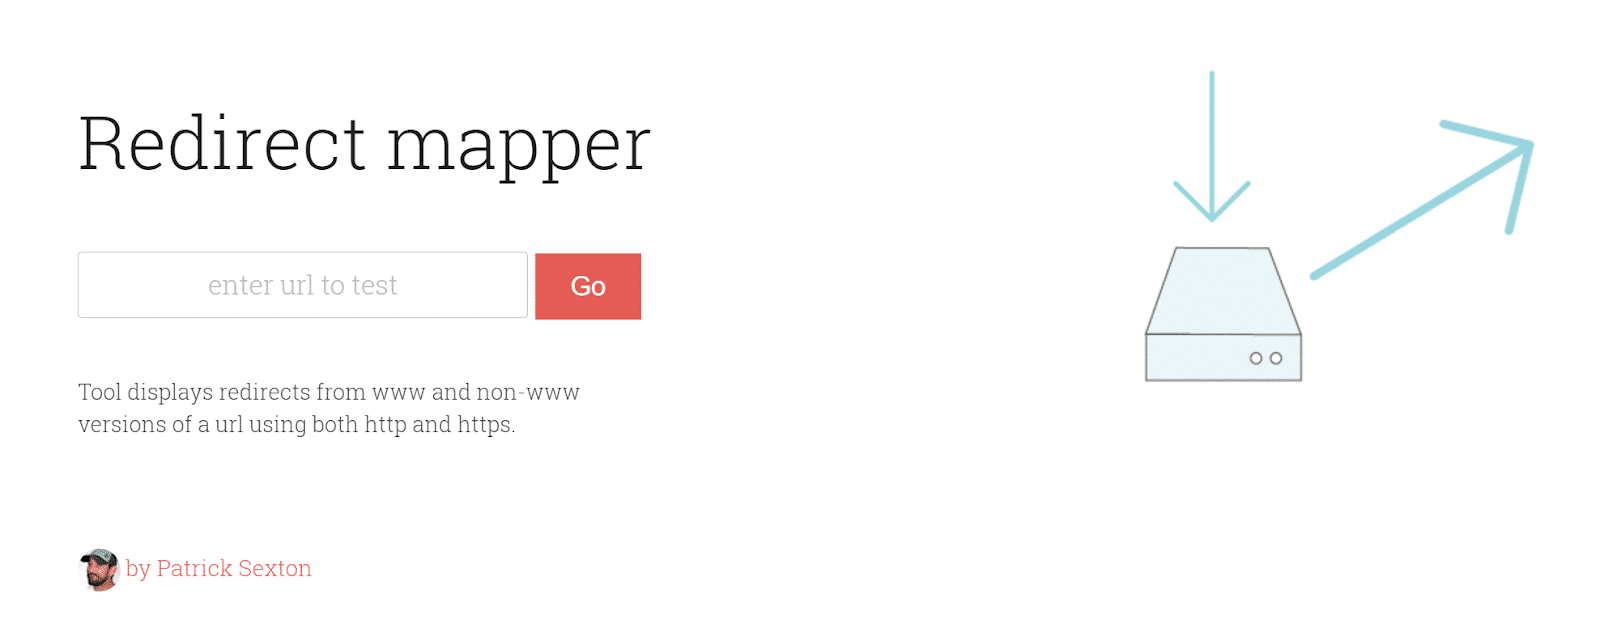 Redirect mapper